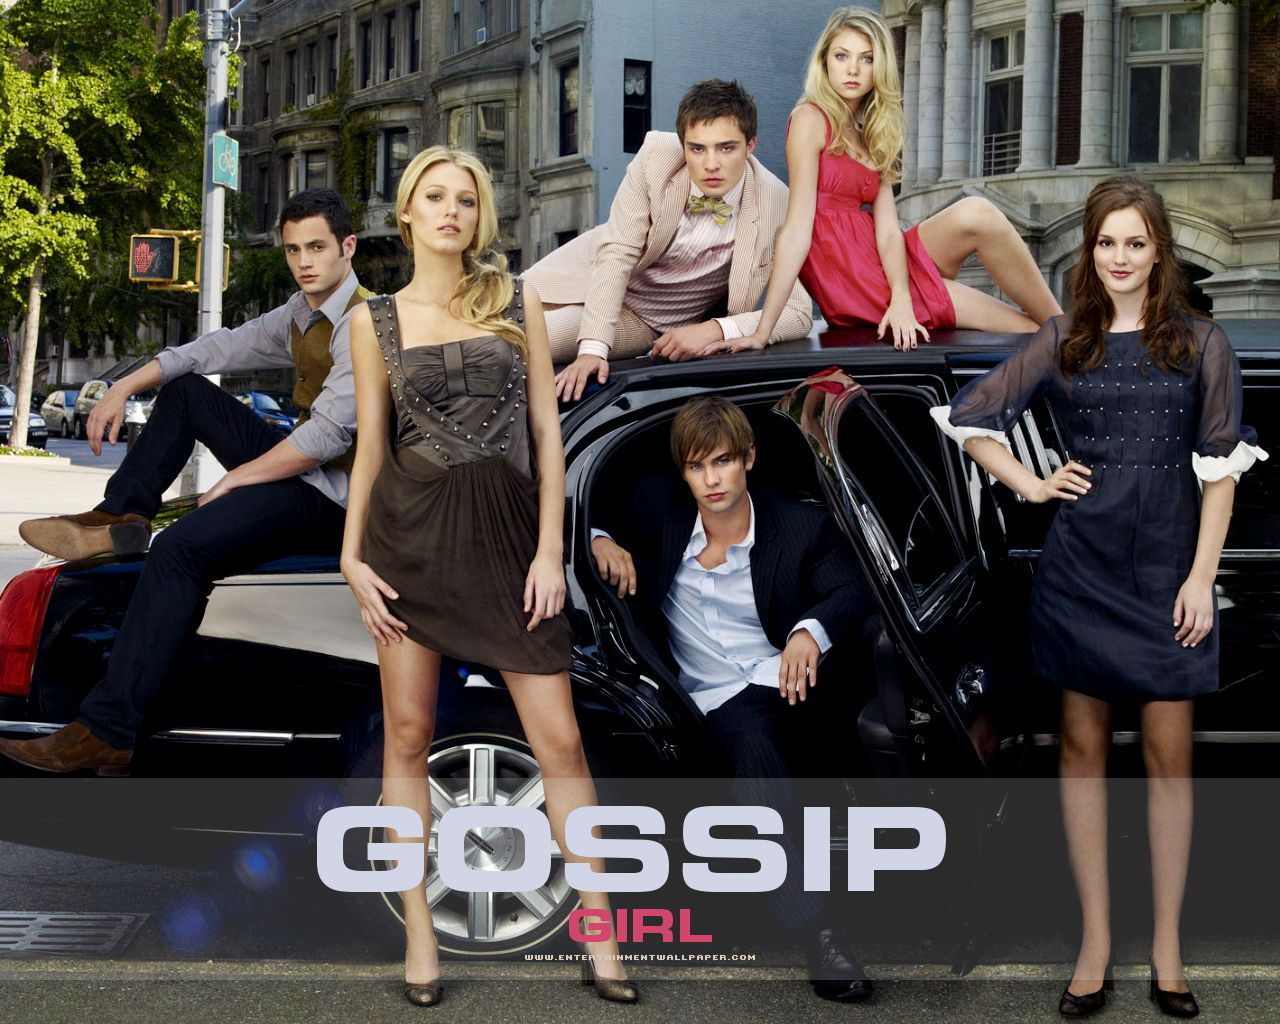 gossip girl season 3 .torrent